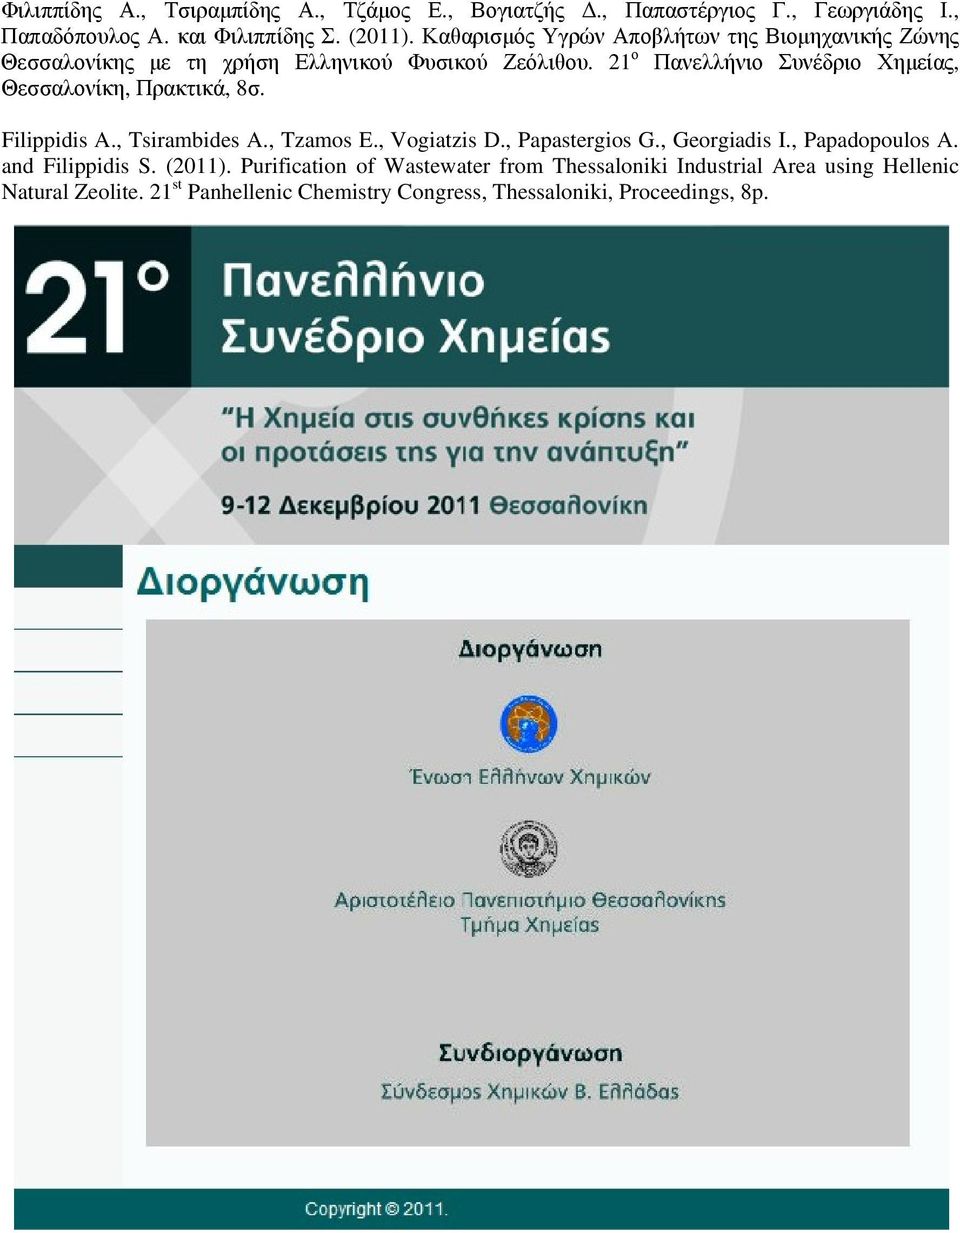 21 ο Πανελλήνιο Συνέδριο Χημείας, Θεσσαλονίκη, Πρακτικά, 8σ. Filippidis A., Tsirambides A., Tzamos E., Vogiatzis D., Papastergios G., Georgiadis I.